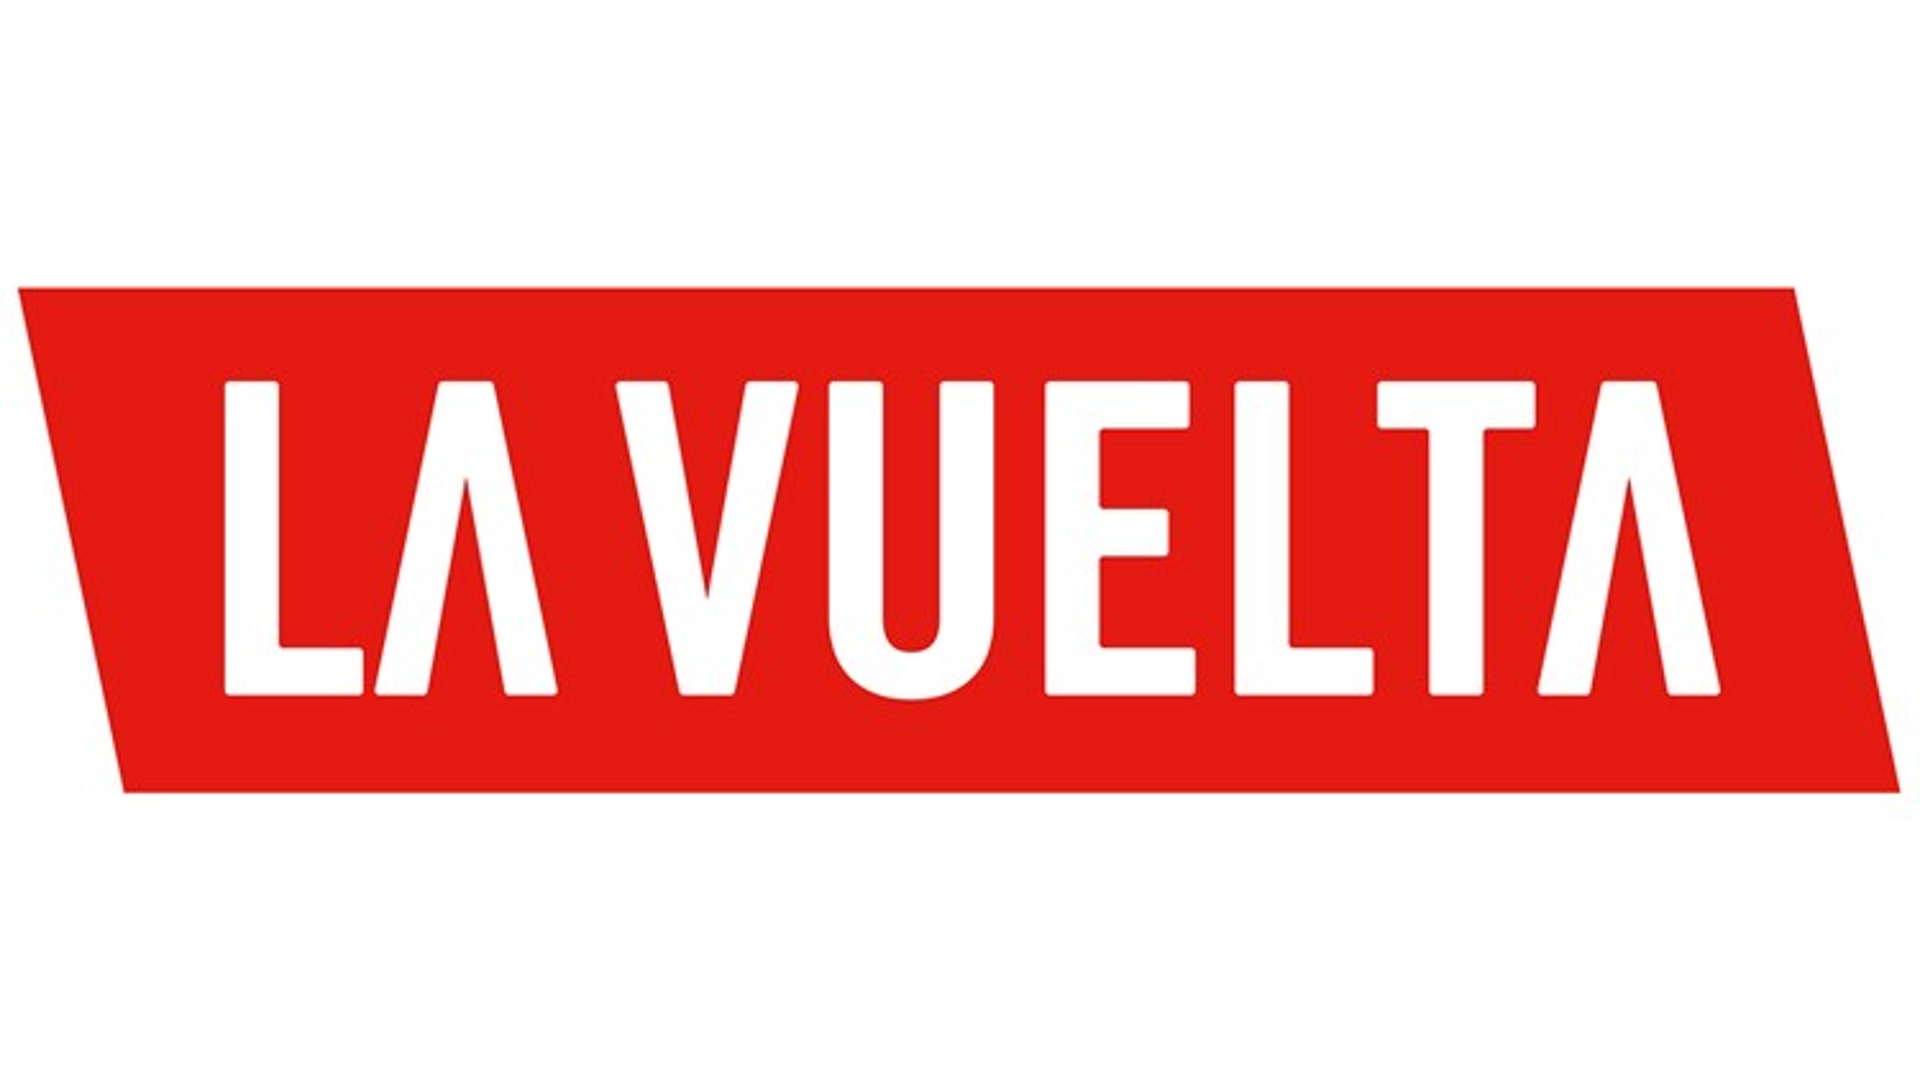 La Vuelta Logo